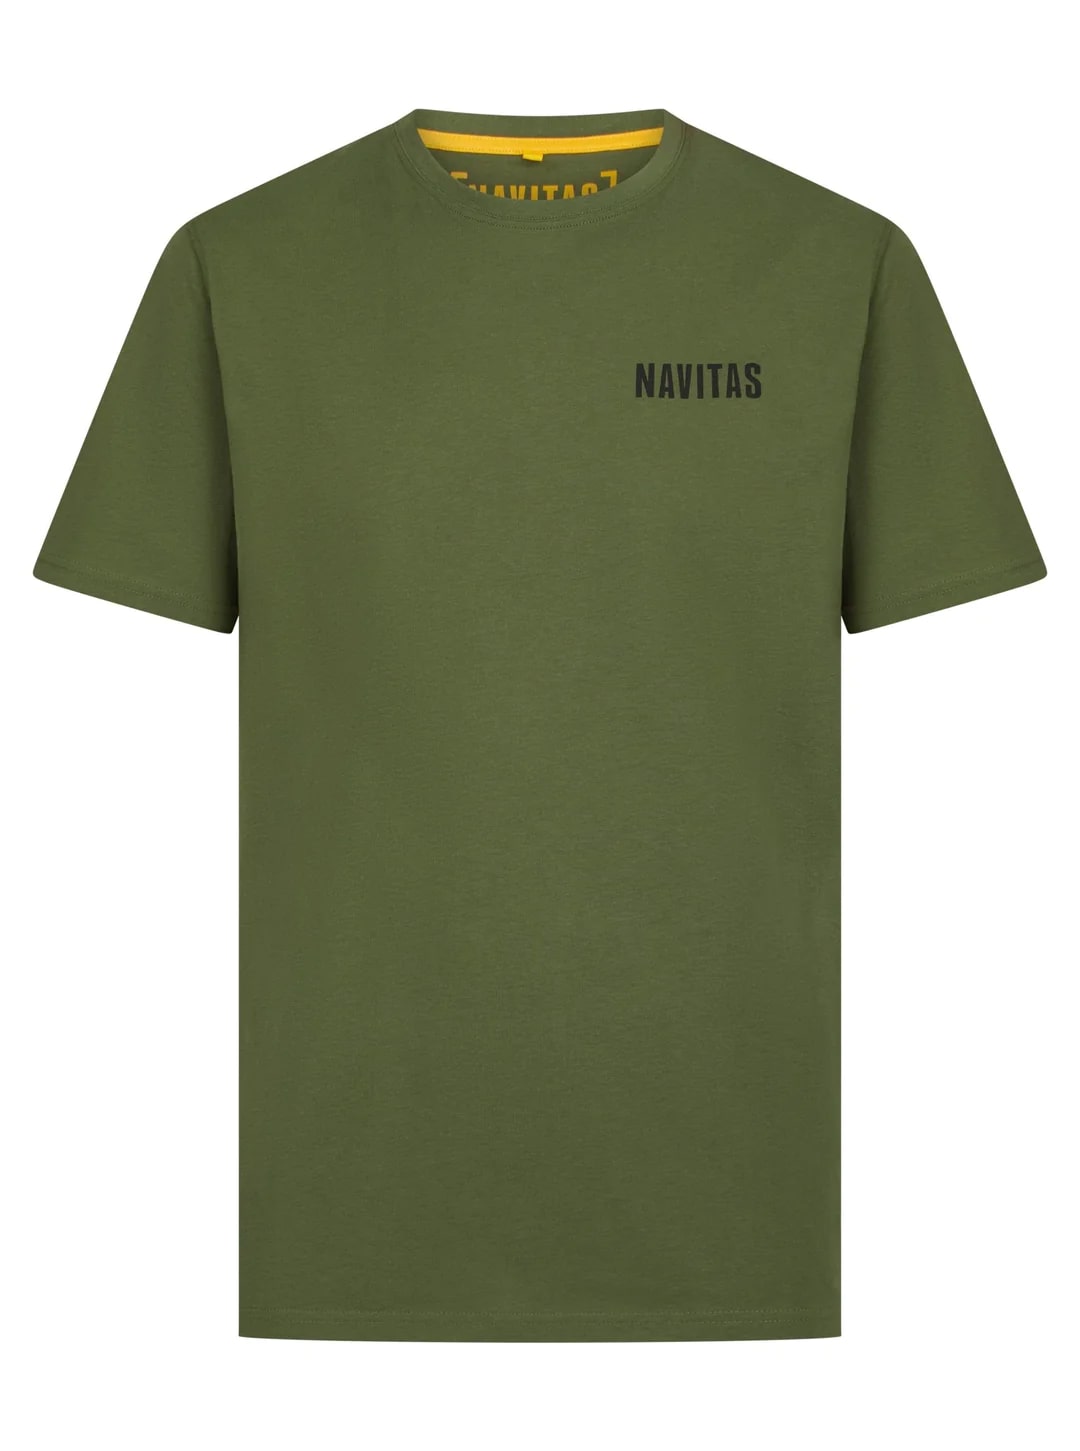 Navitas Diving T-Shirt